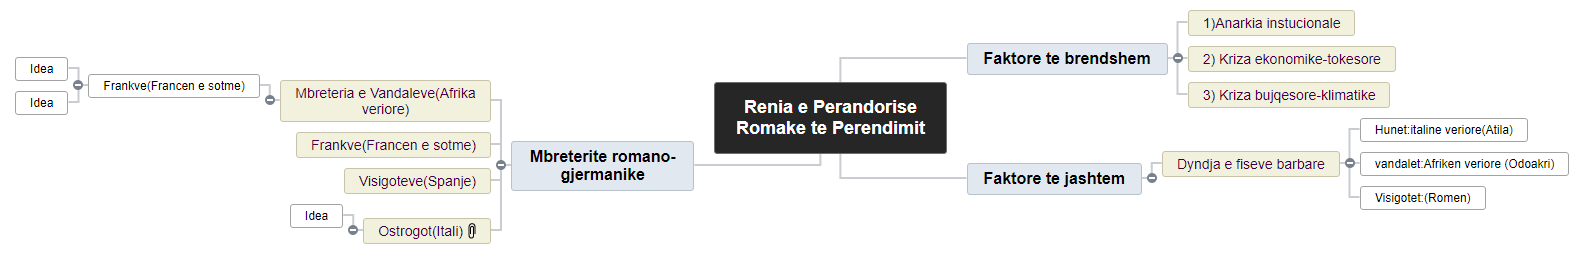 Renia e Perandorise Romake te Perendimit1 WBS